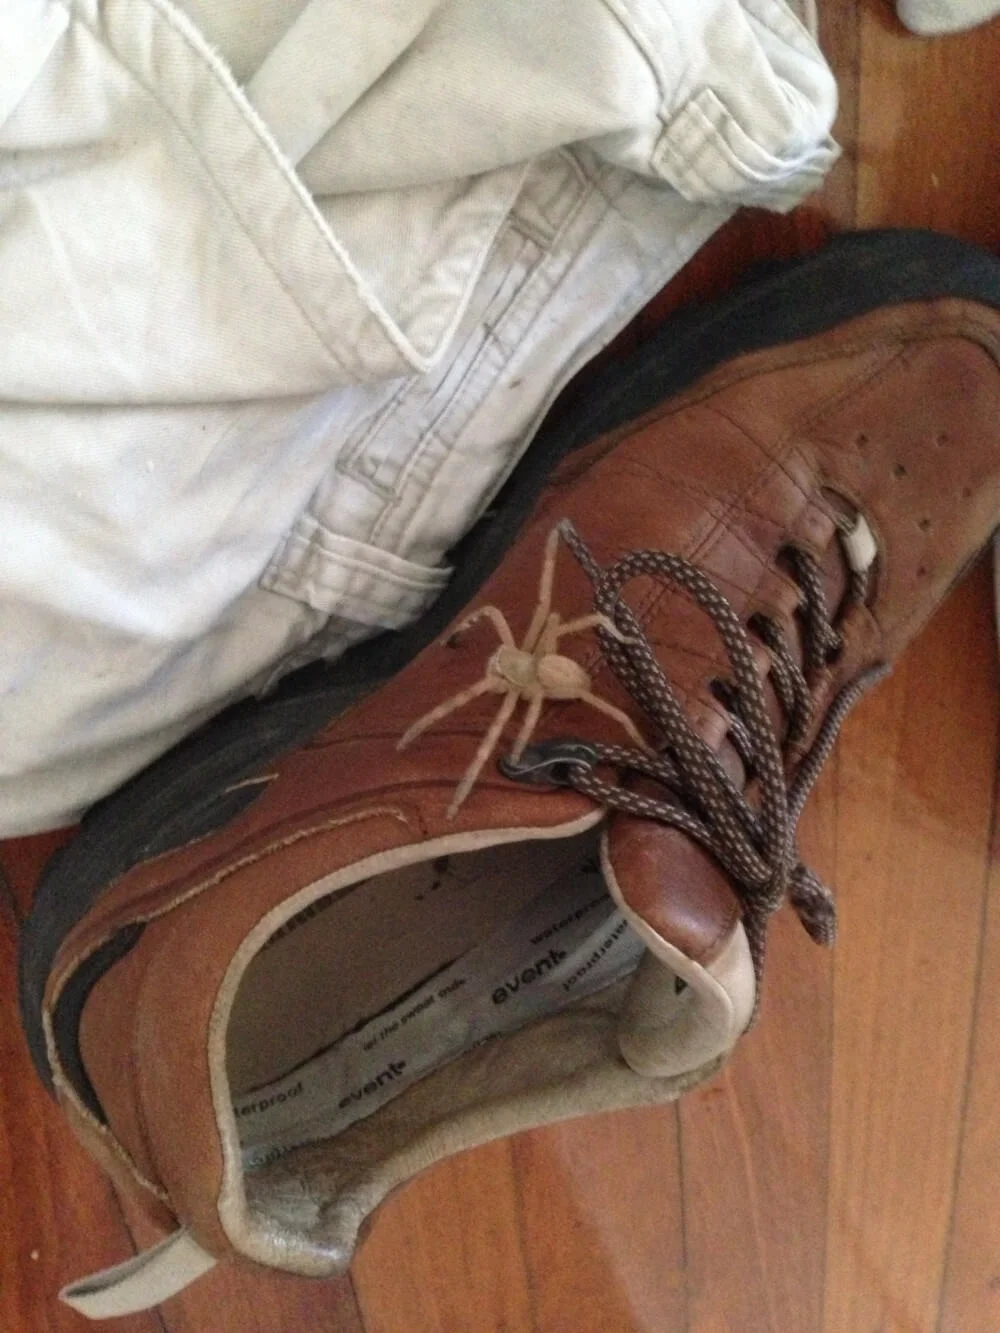 Worst Shoe Fails